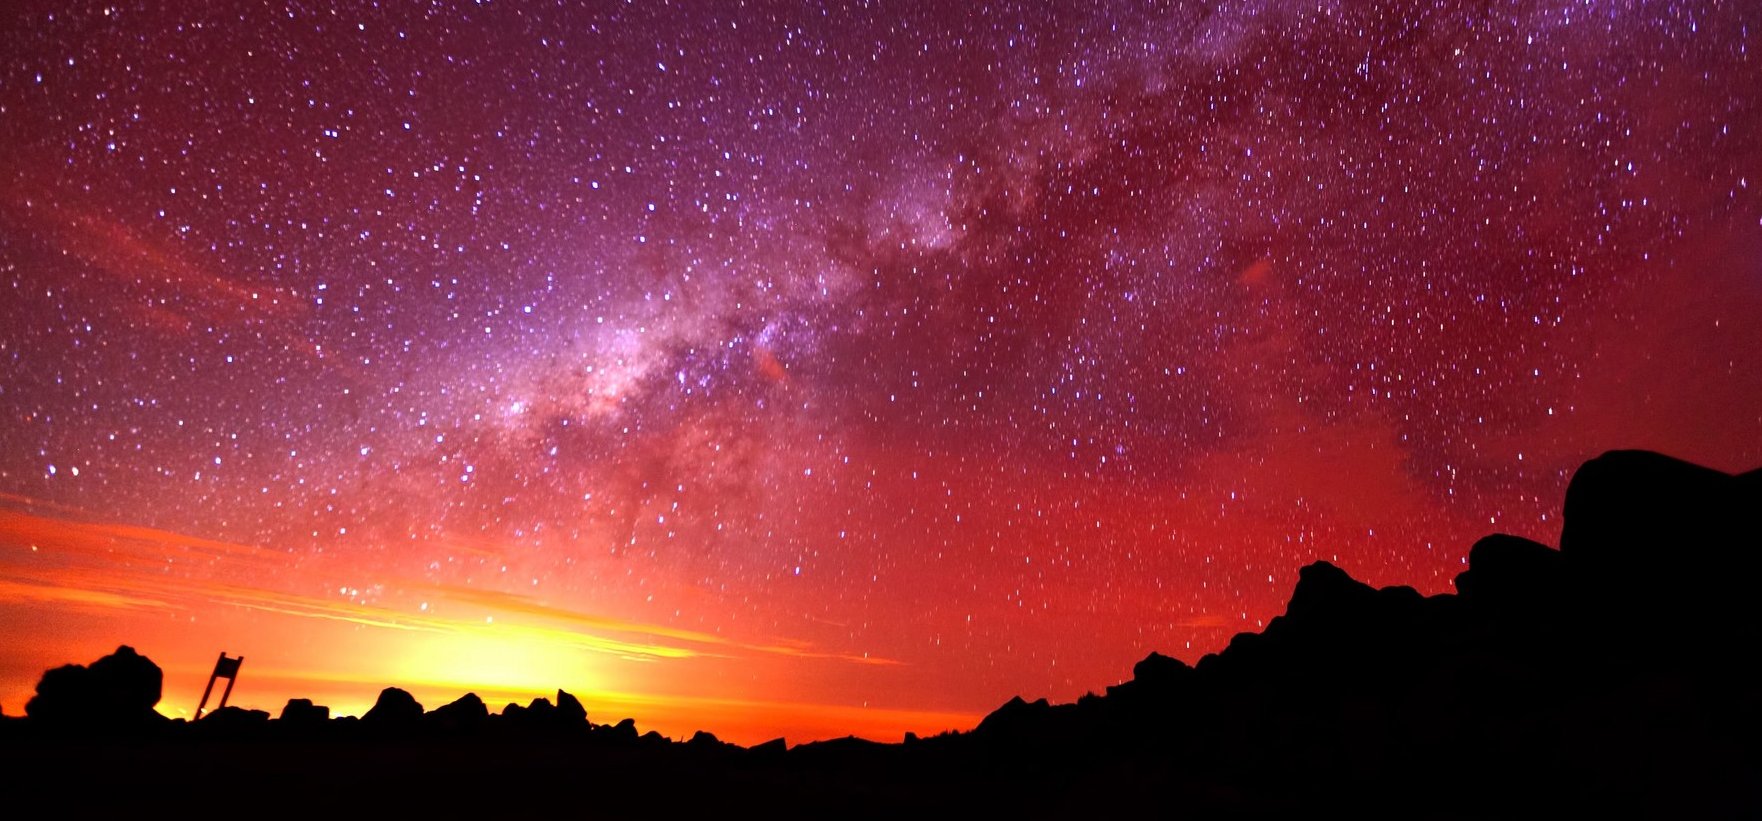 Napi horoszkóp: Aggódnod kell a mai nap miatt? – A csillagok megsúgják a választ!